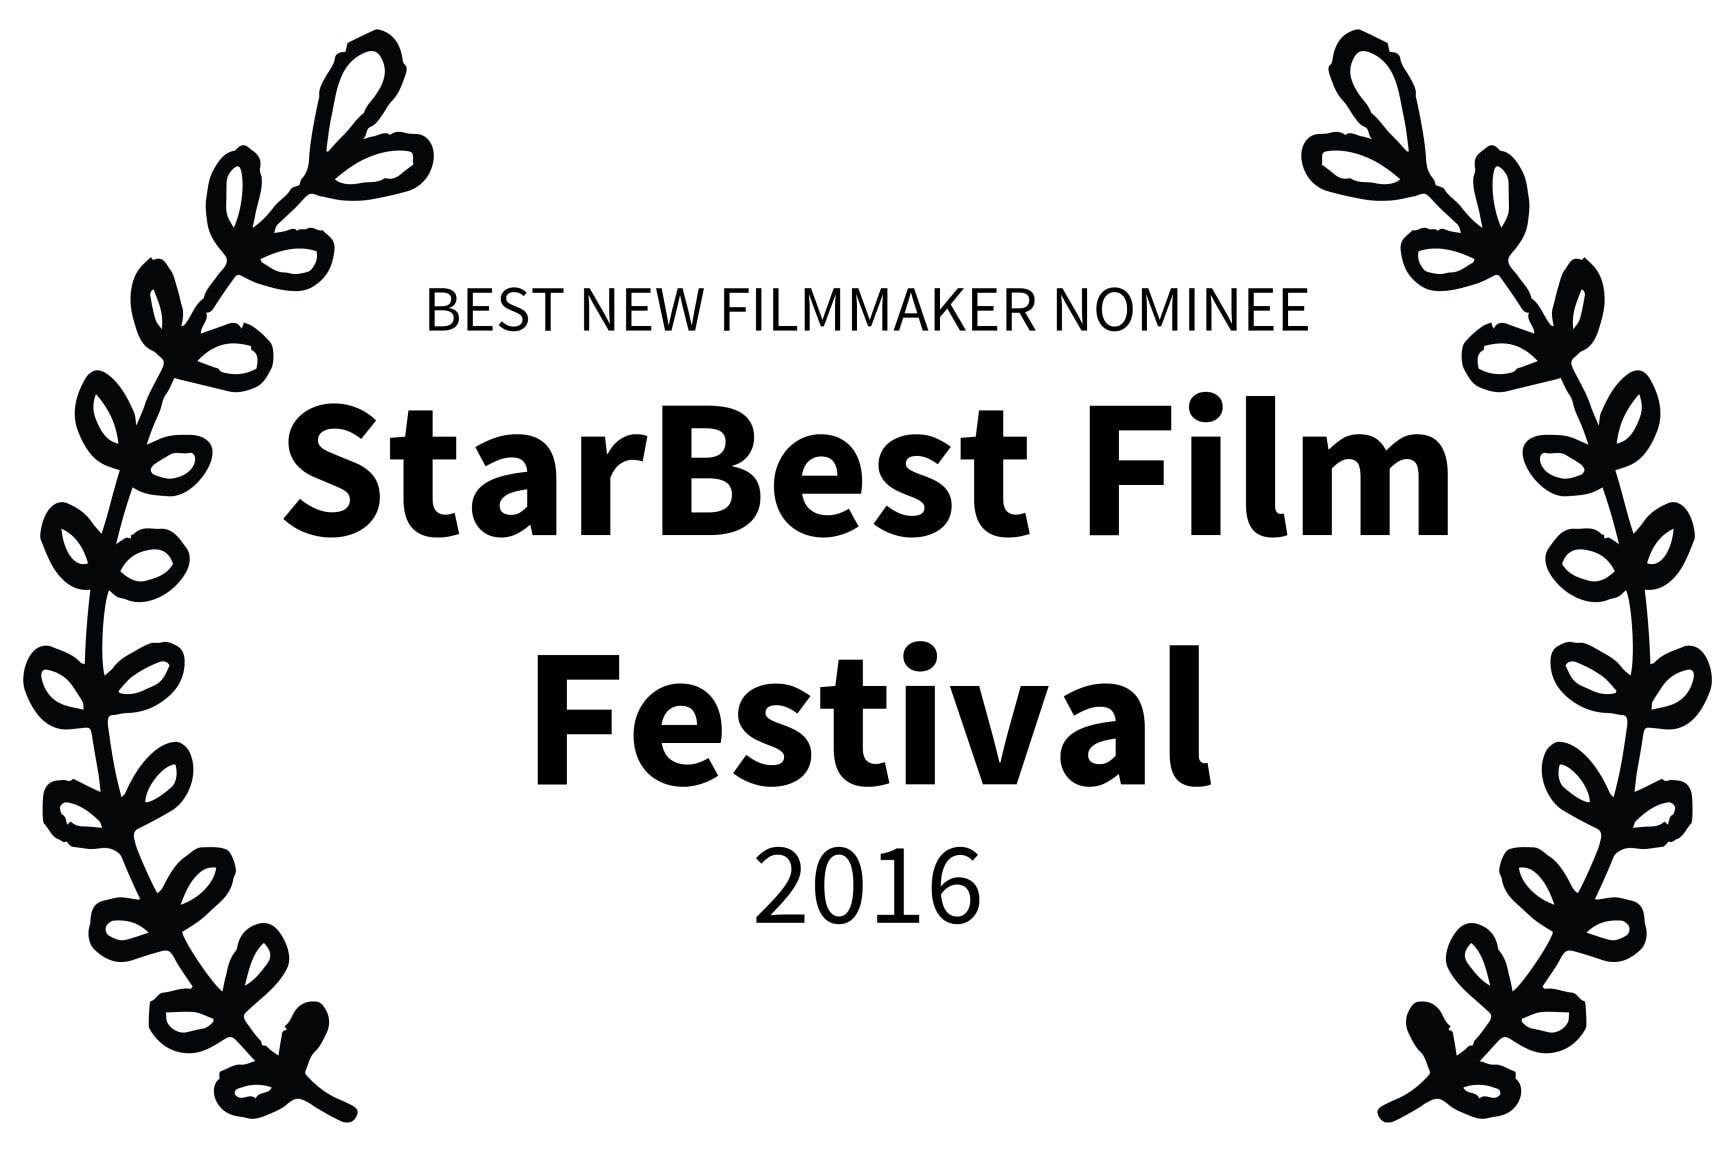 BEST NEW FILMMAKER NOMINEE - StarBest Film Festival - 2016